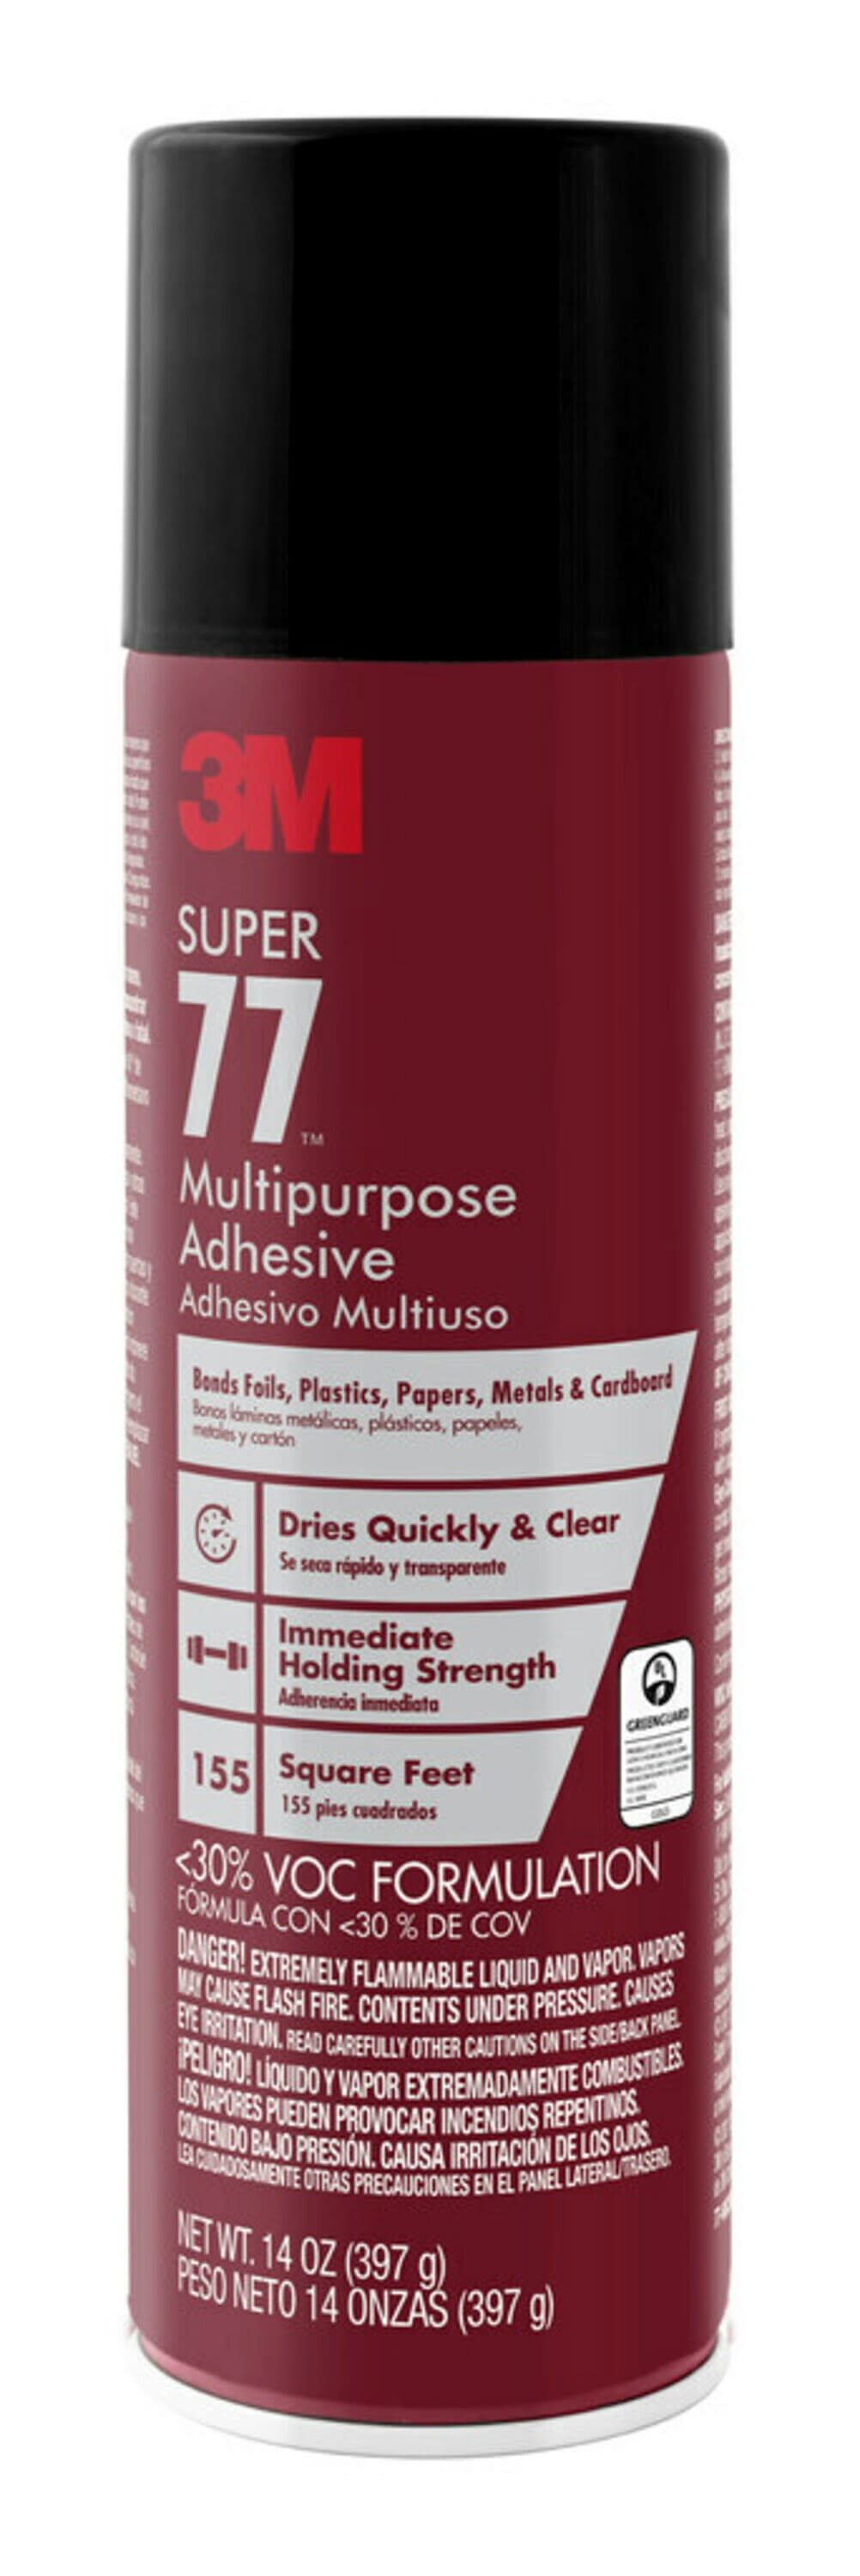 3M(TM) Super 77(TM) Adhesive, 5 gal, 1 per case Bulk, Not for Sale in  California